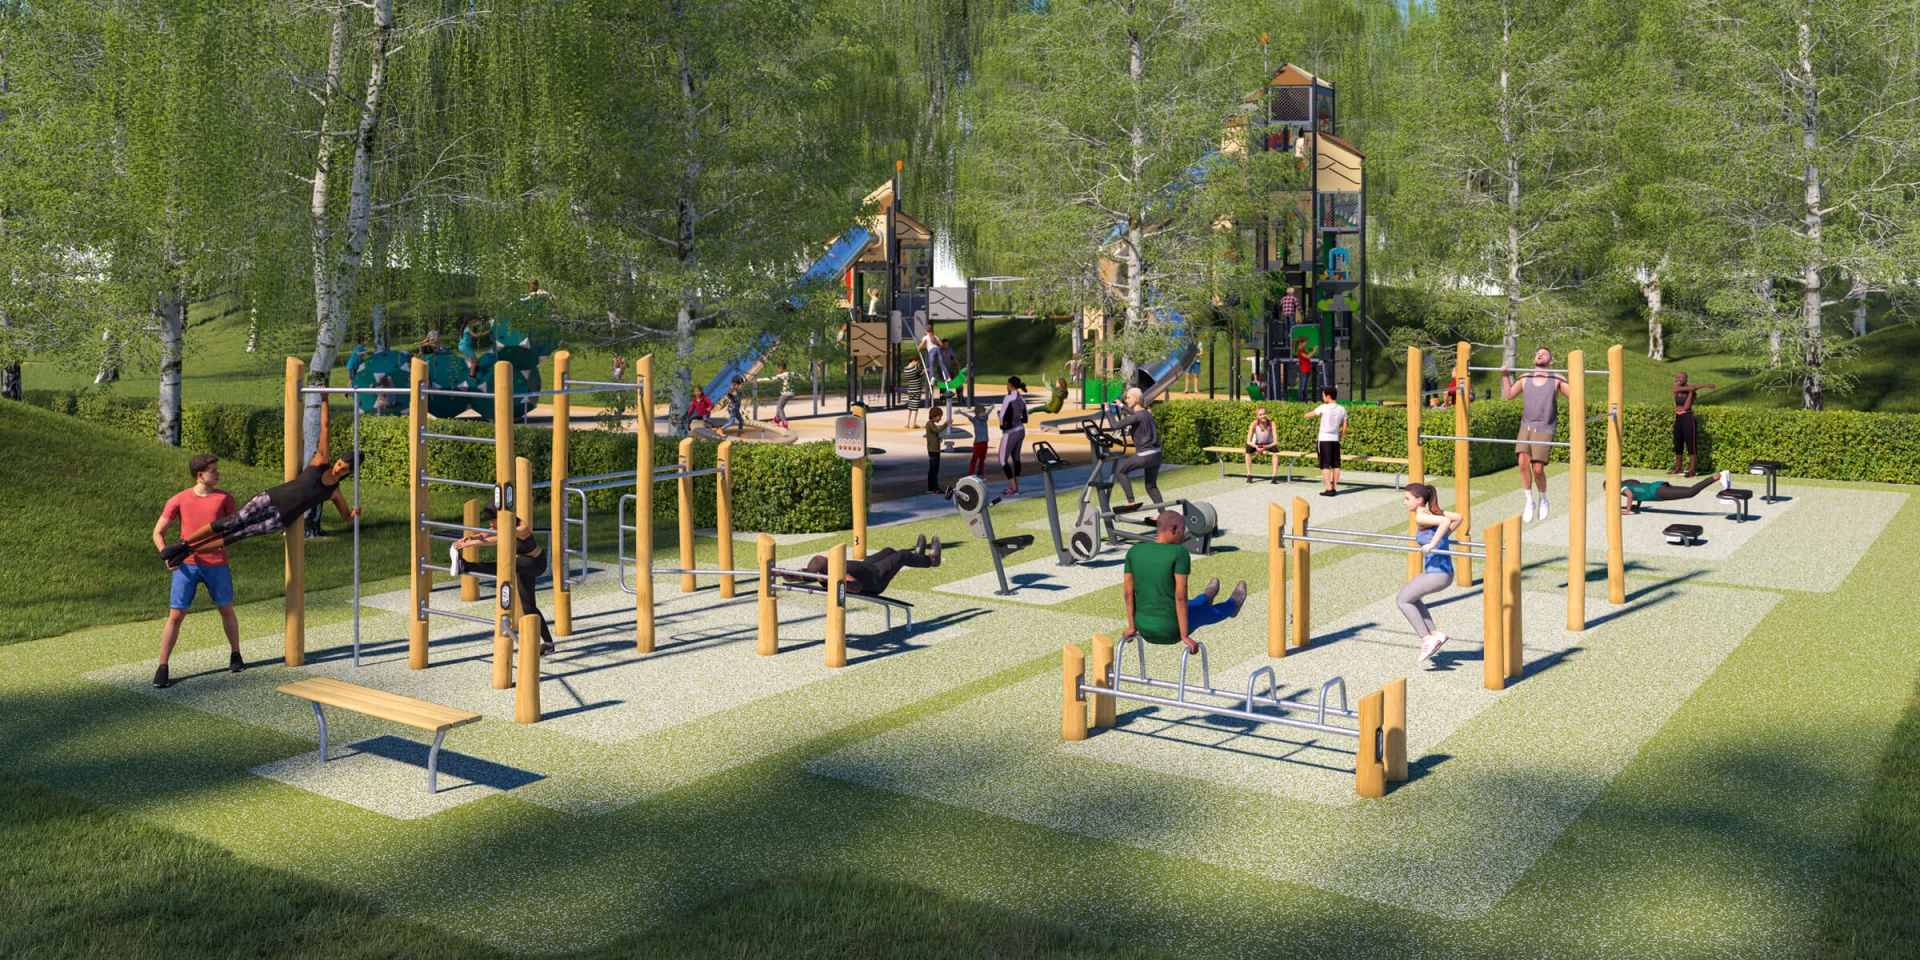 Idea de diseño para un gimnasio exterior de madera con zona de juegos para niños